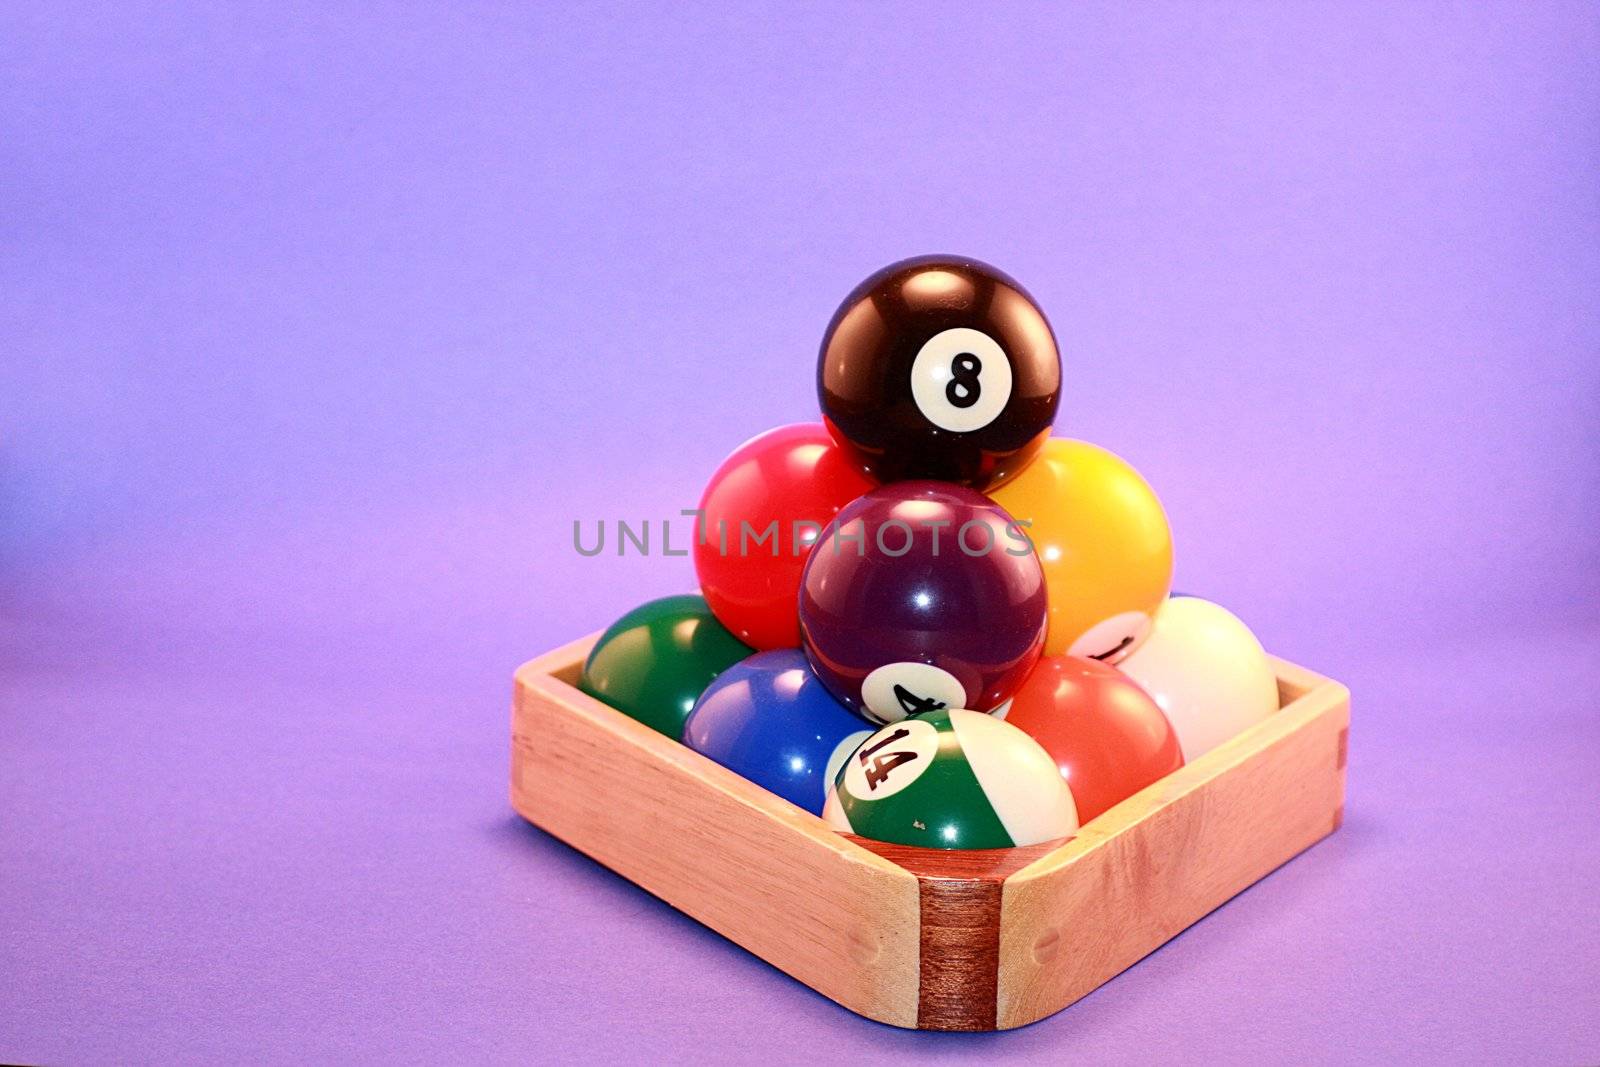 Billiard Pool Balls on Blue Background by knktucker